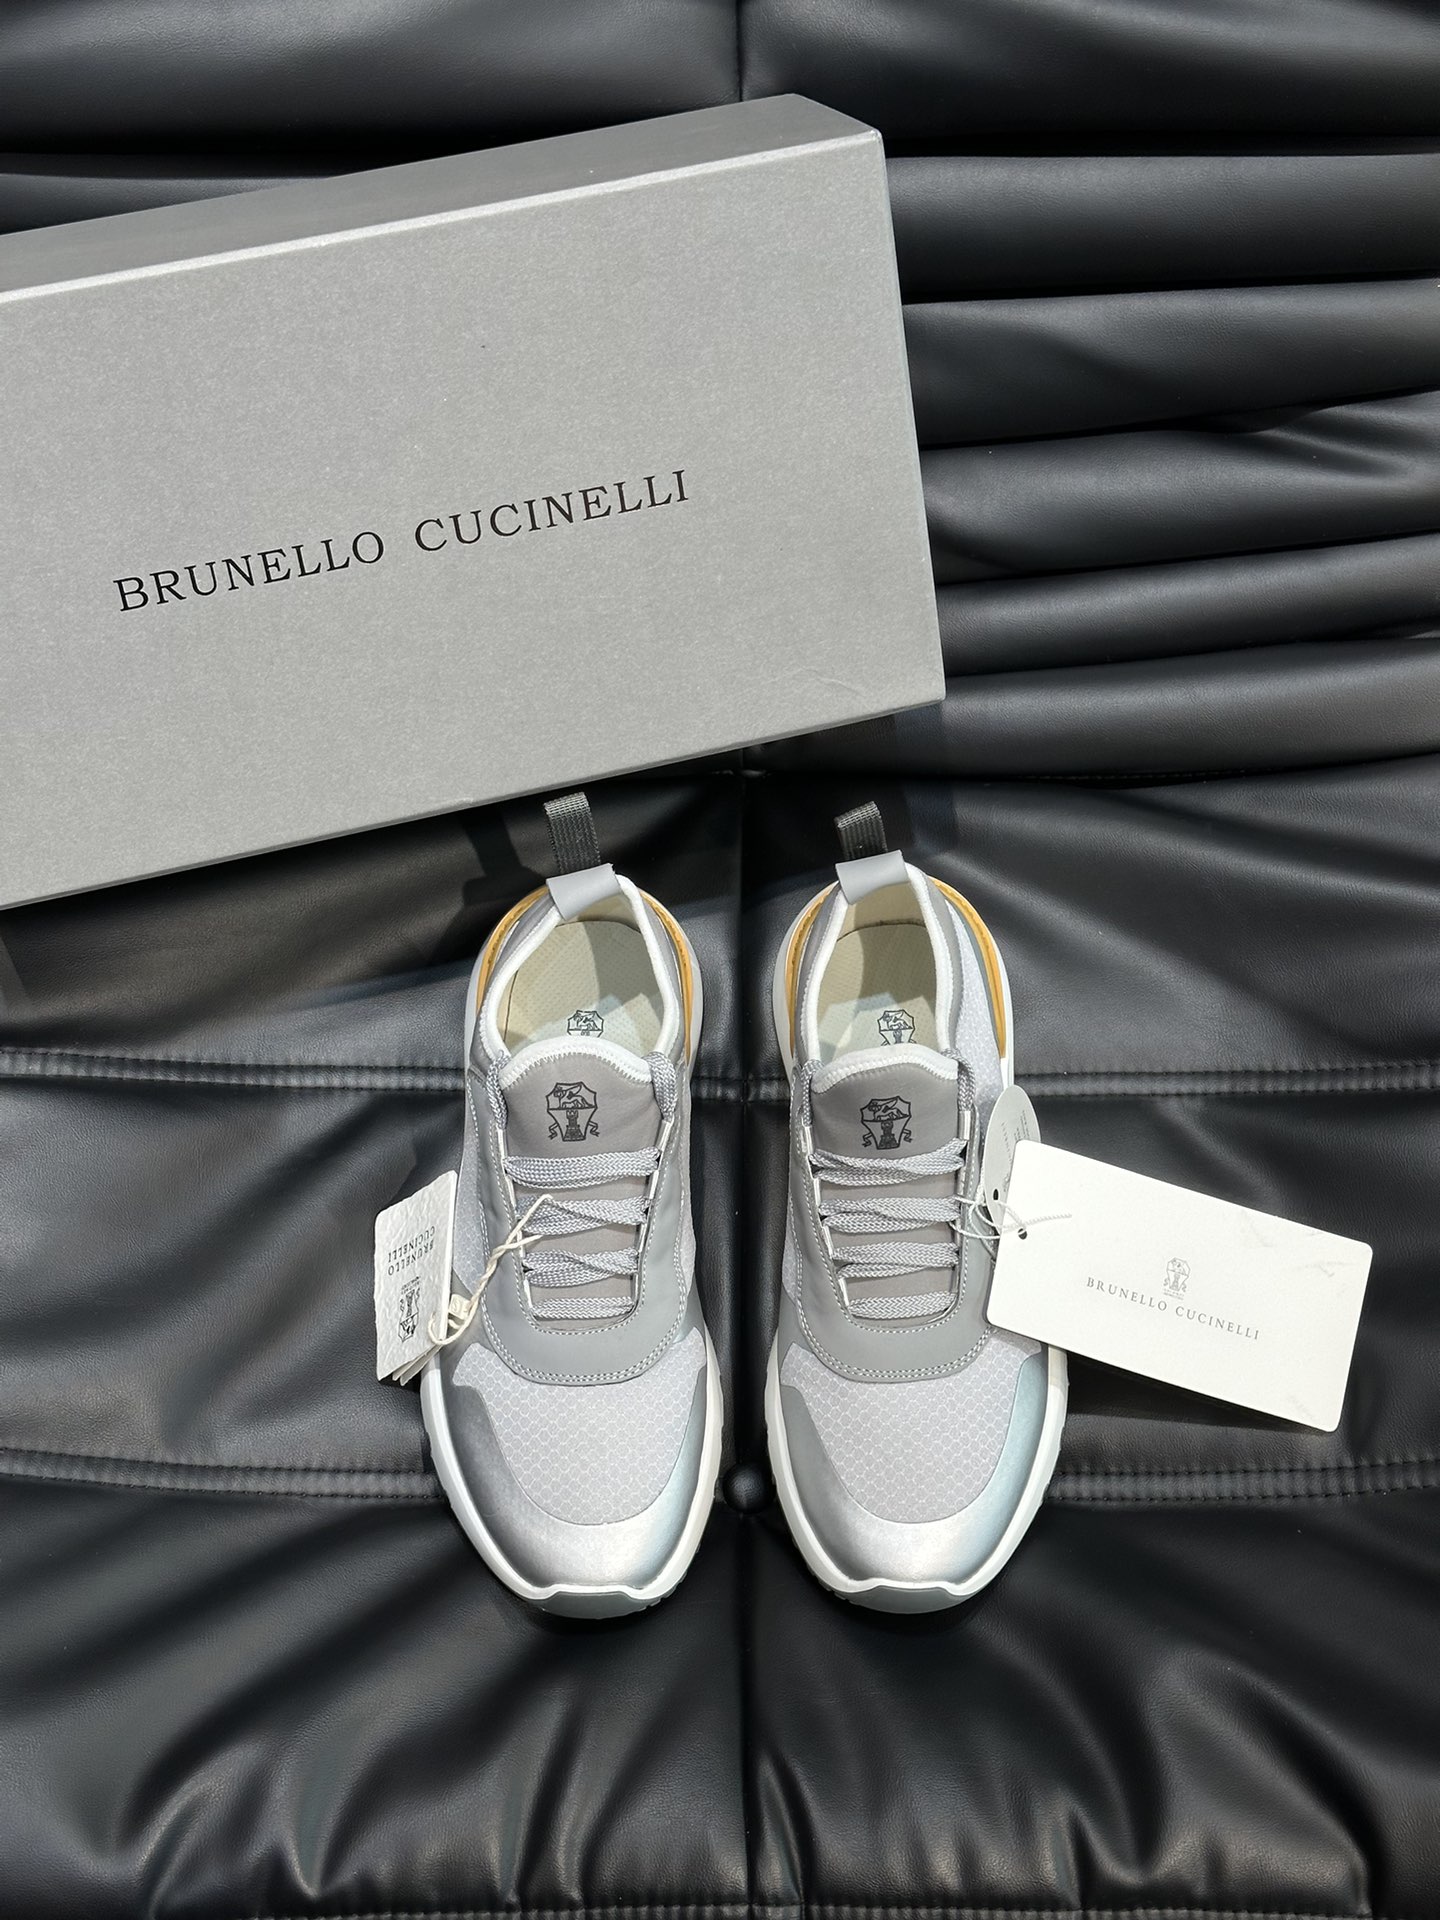 BrunelloCucinelli春夏新款拼色运动板男鞋此款运动鞋面料采用意大利进口高丝光水洗翻毛皮和意